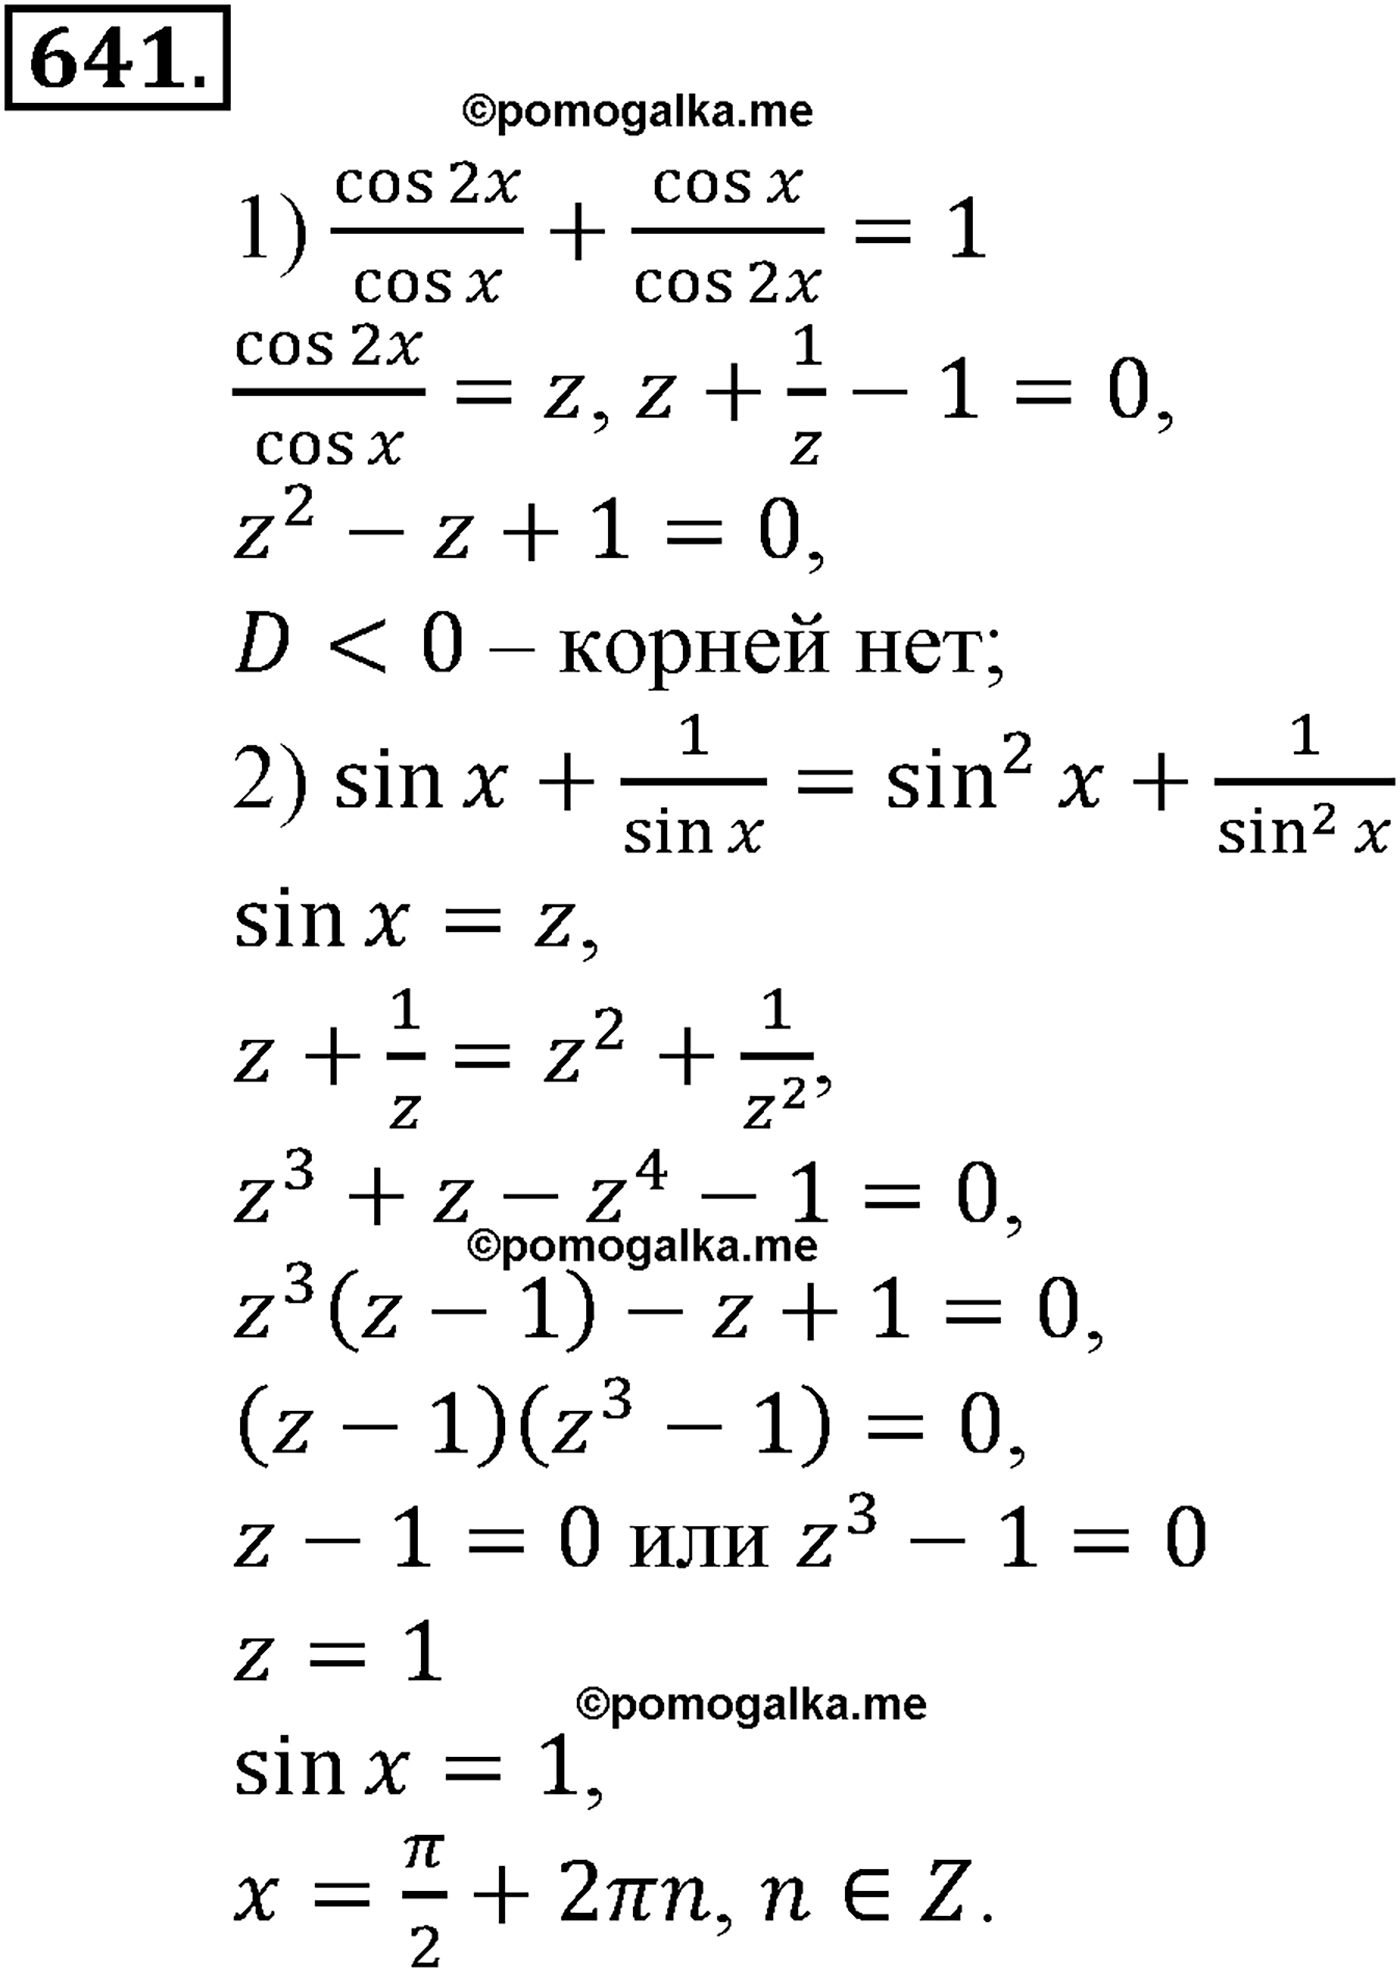 разбор задачи №641 по алгебре за 10-11 класс из учебника Алимова, Колягина